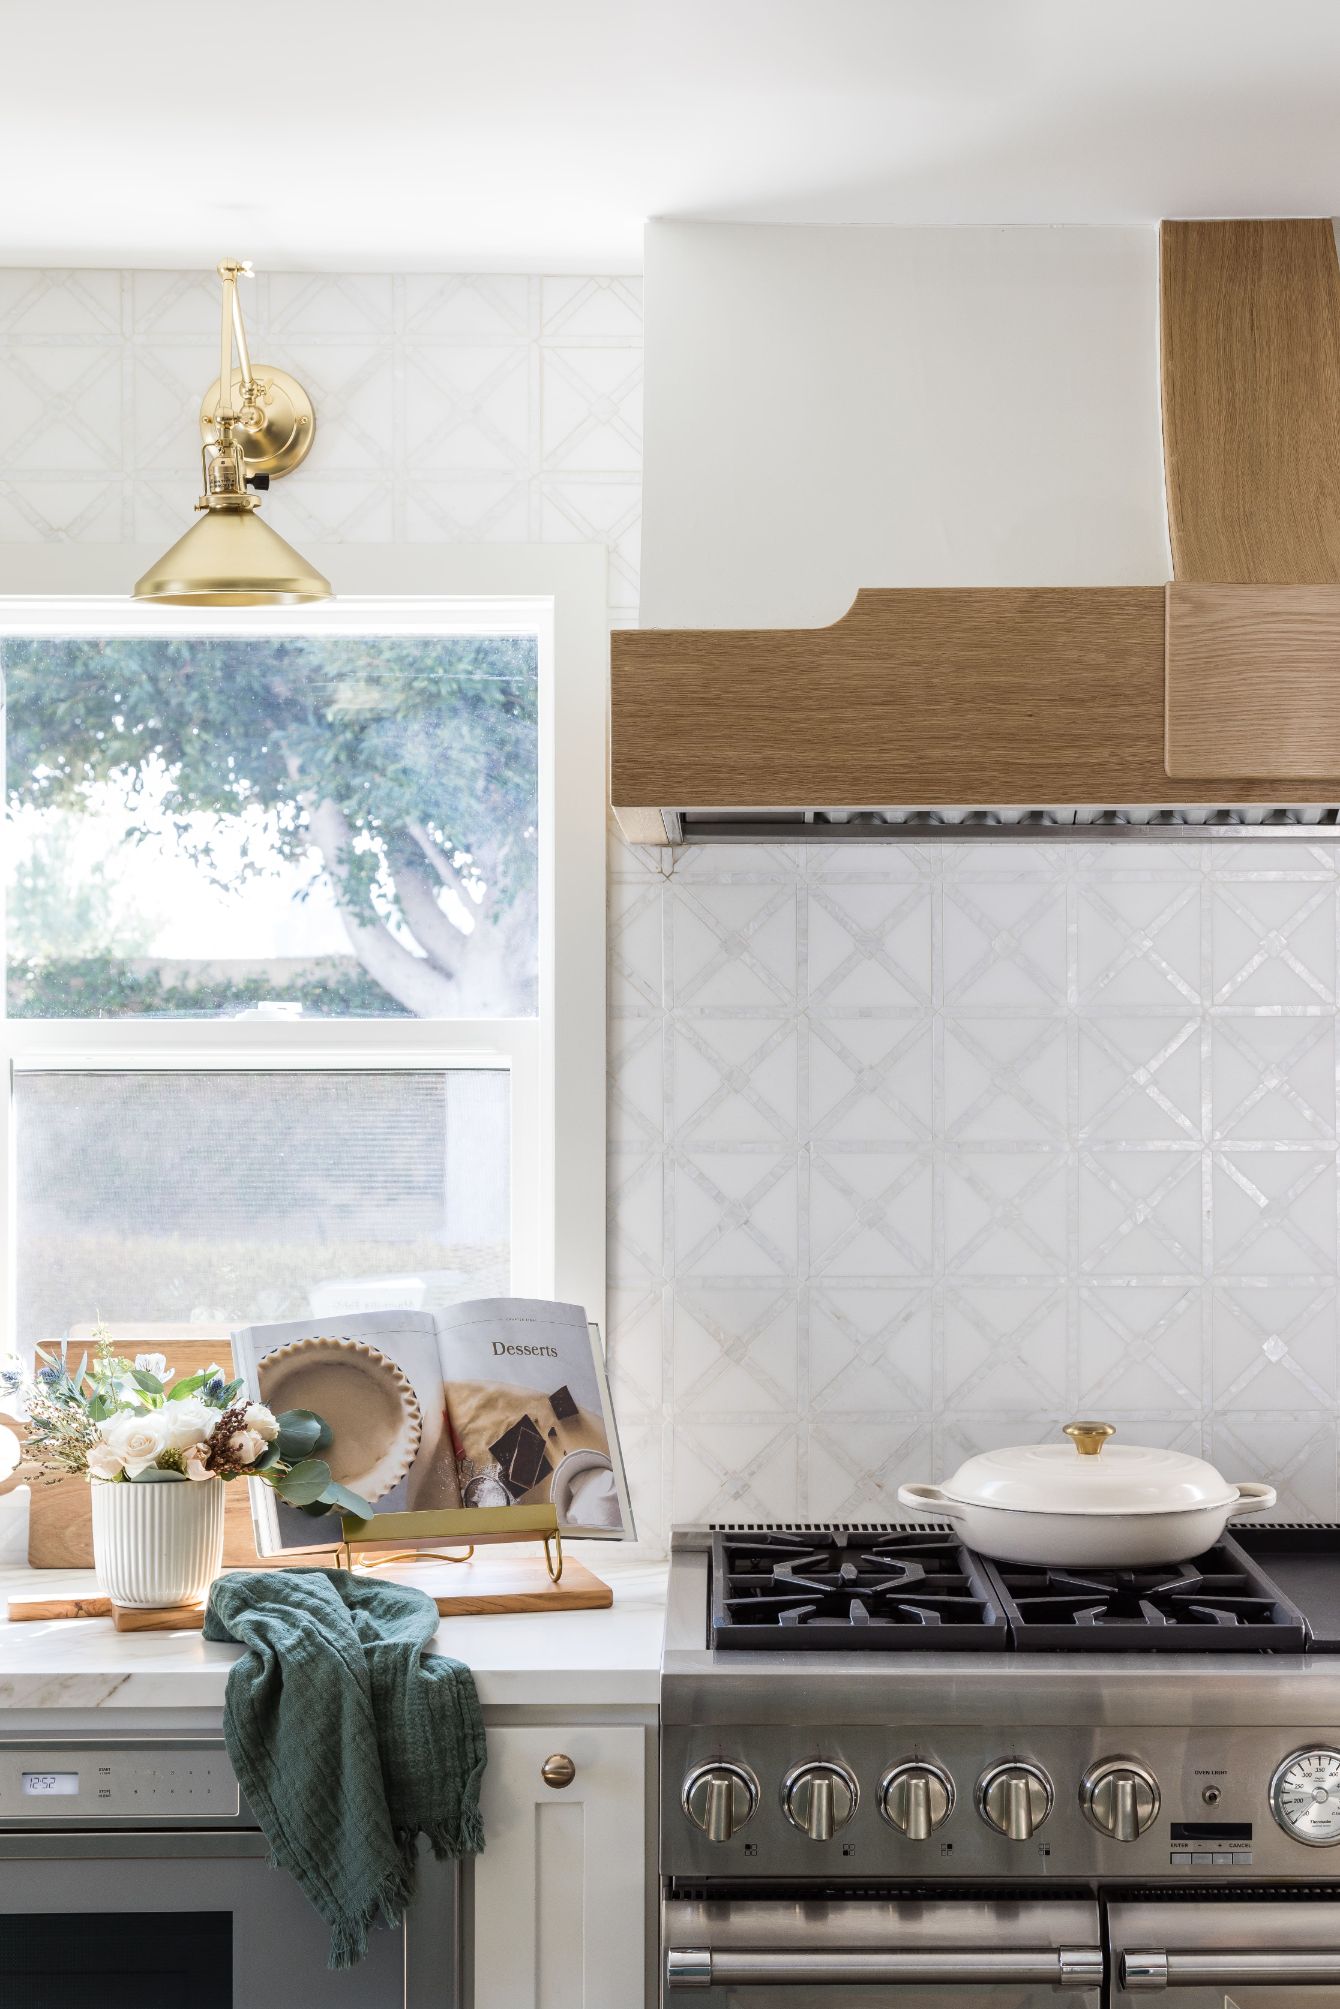 gorgeous backsplash tile in front of gas range in kitchen remodel